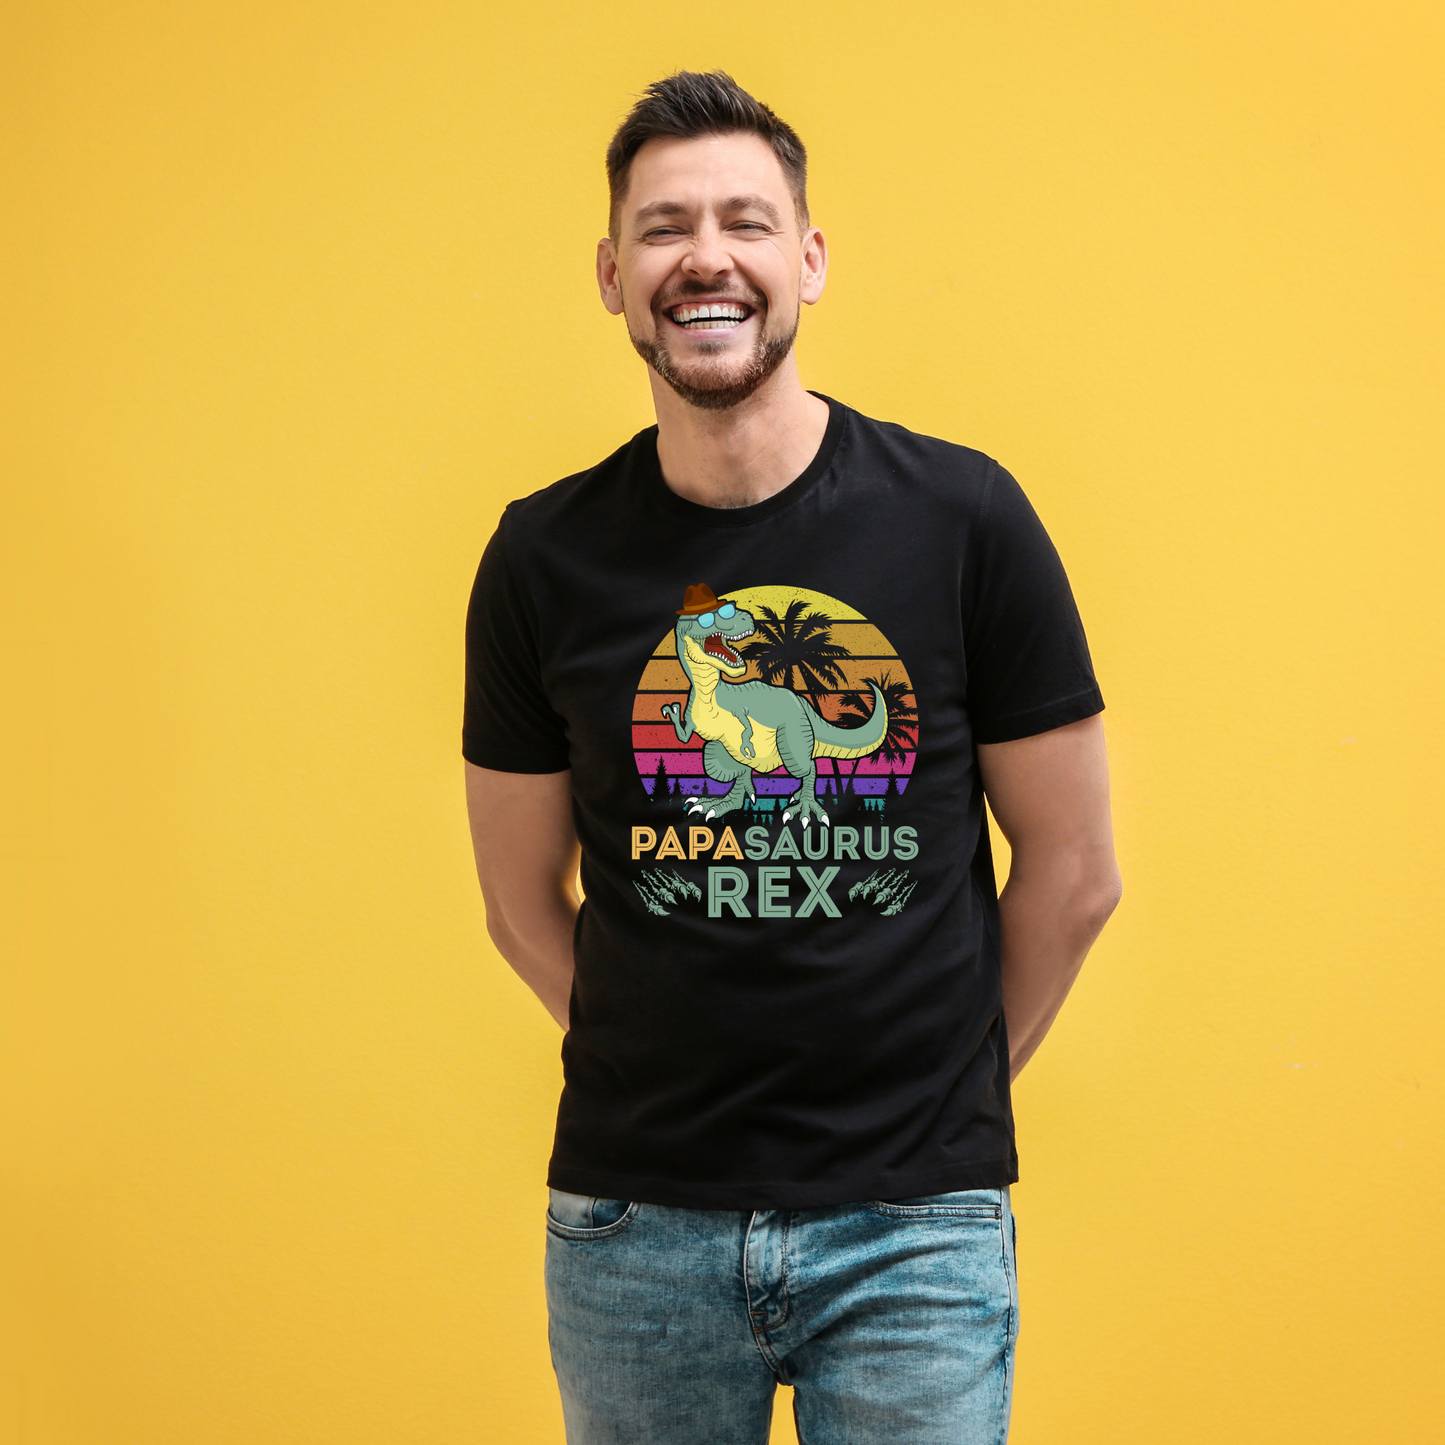 Papasaurus Rex T-Shirt - Funny Dad Shirt